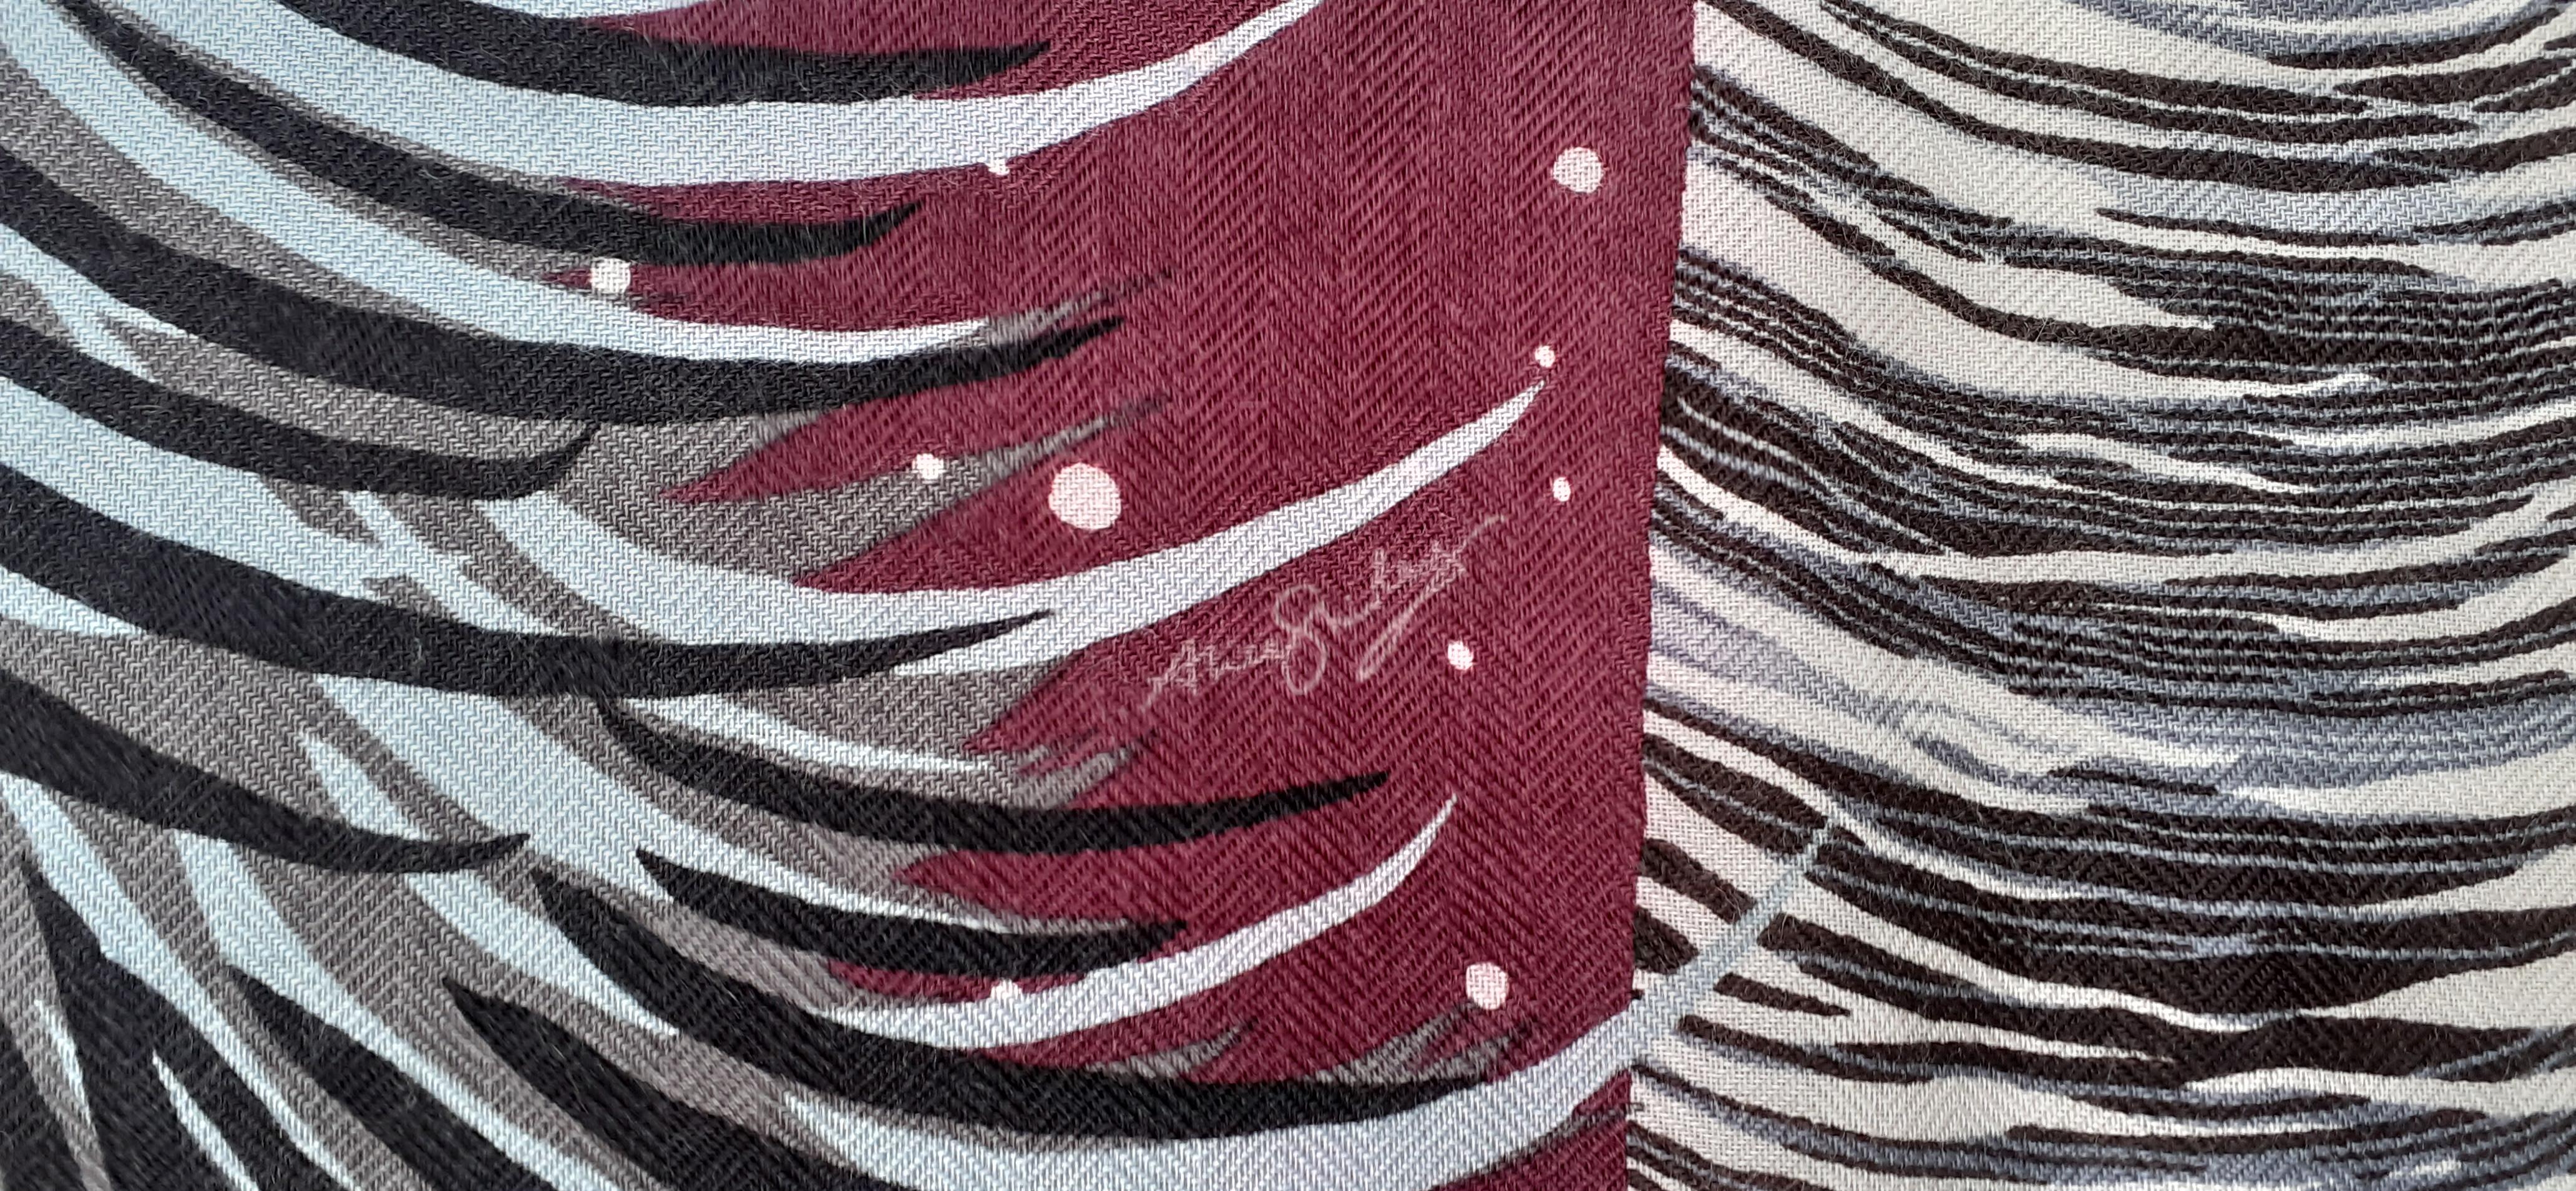 Atemberaubend authentischer Hermès-Schal

Druck: 